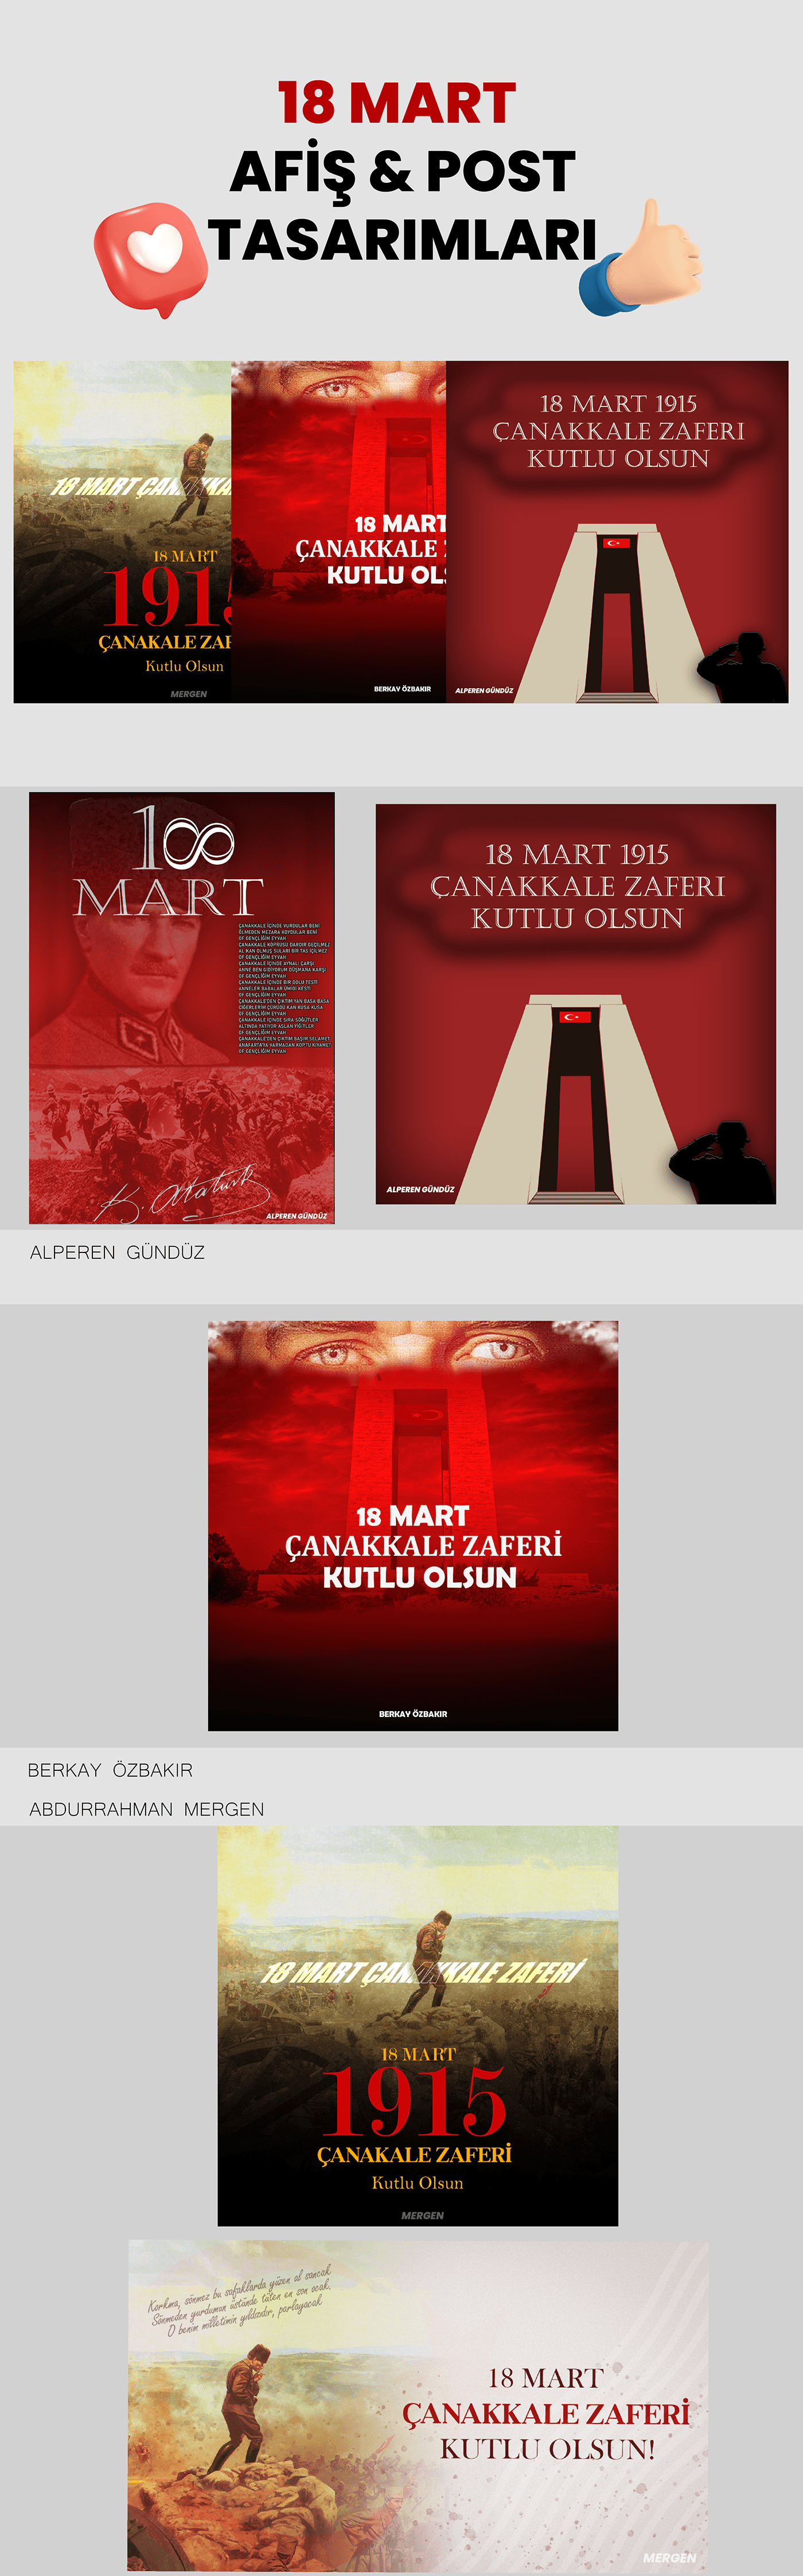 18 mart  çanakkale zaferi Ataturk Mustafa Kemal Atatürk Social media post 30 Ağustos zafer bayramı sosyal medya grafik tasarım Afiş